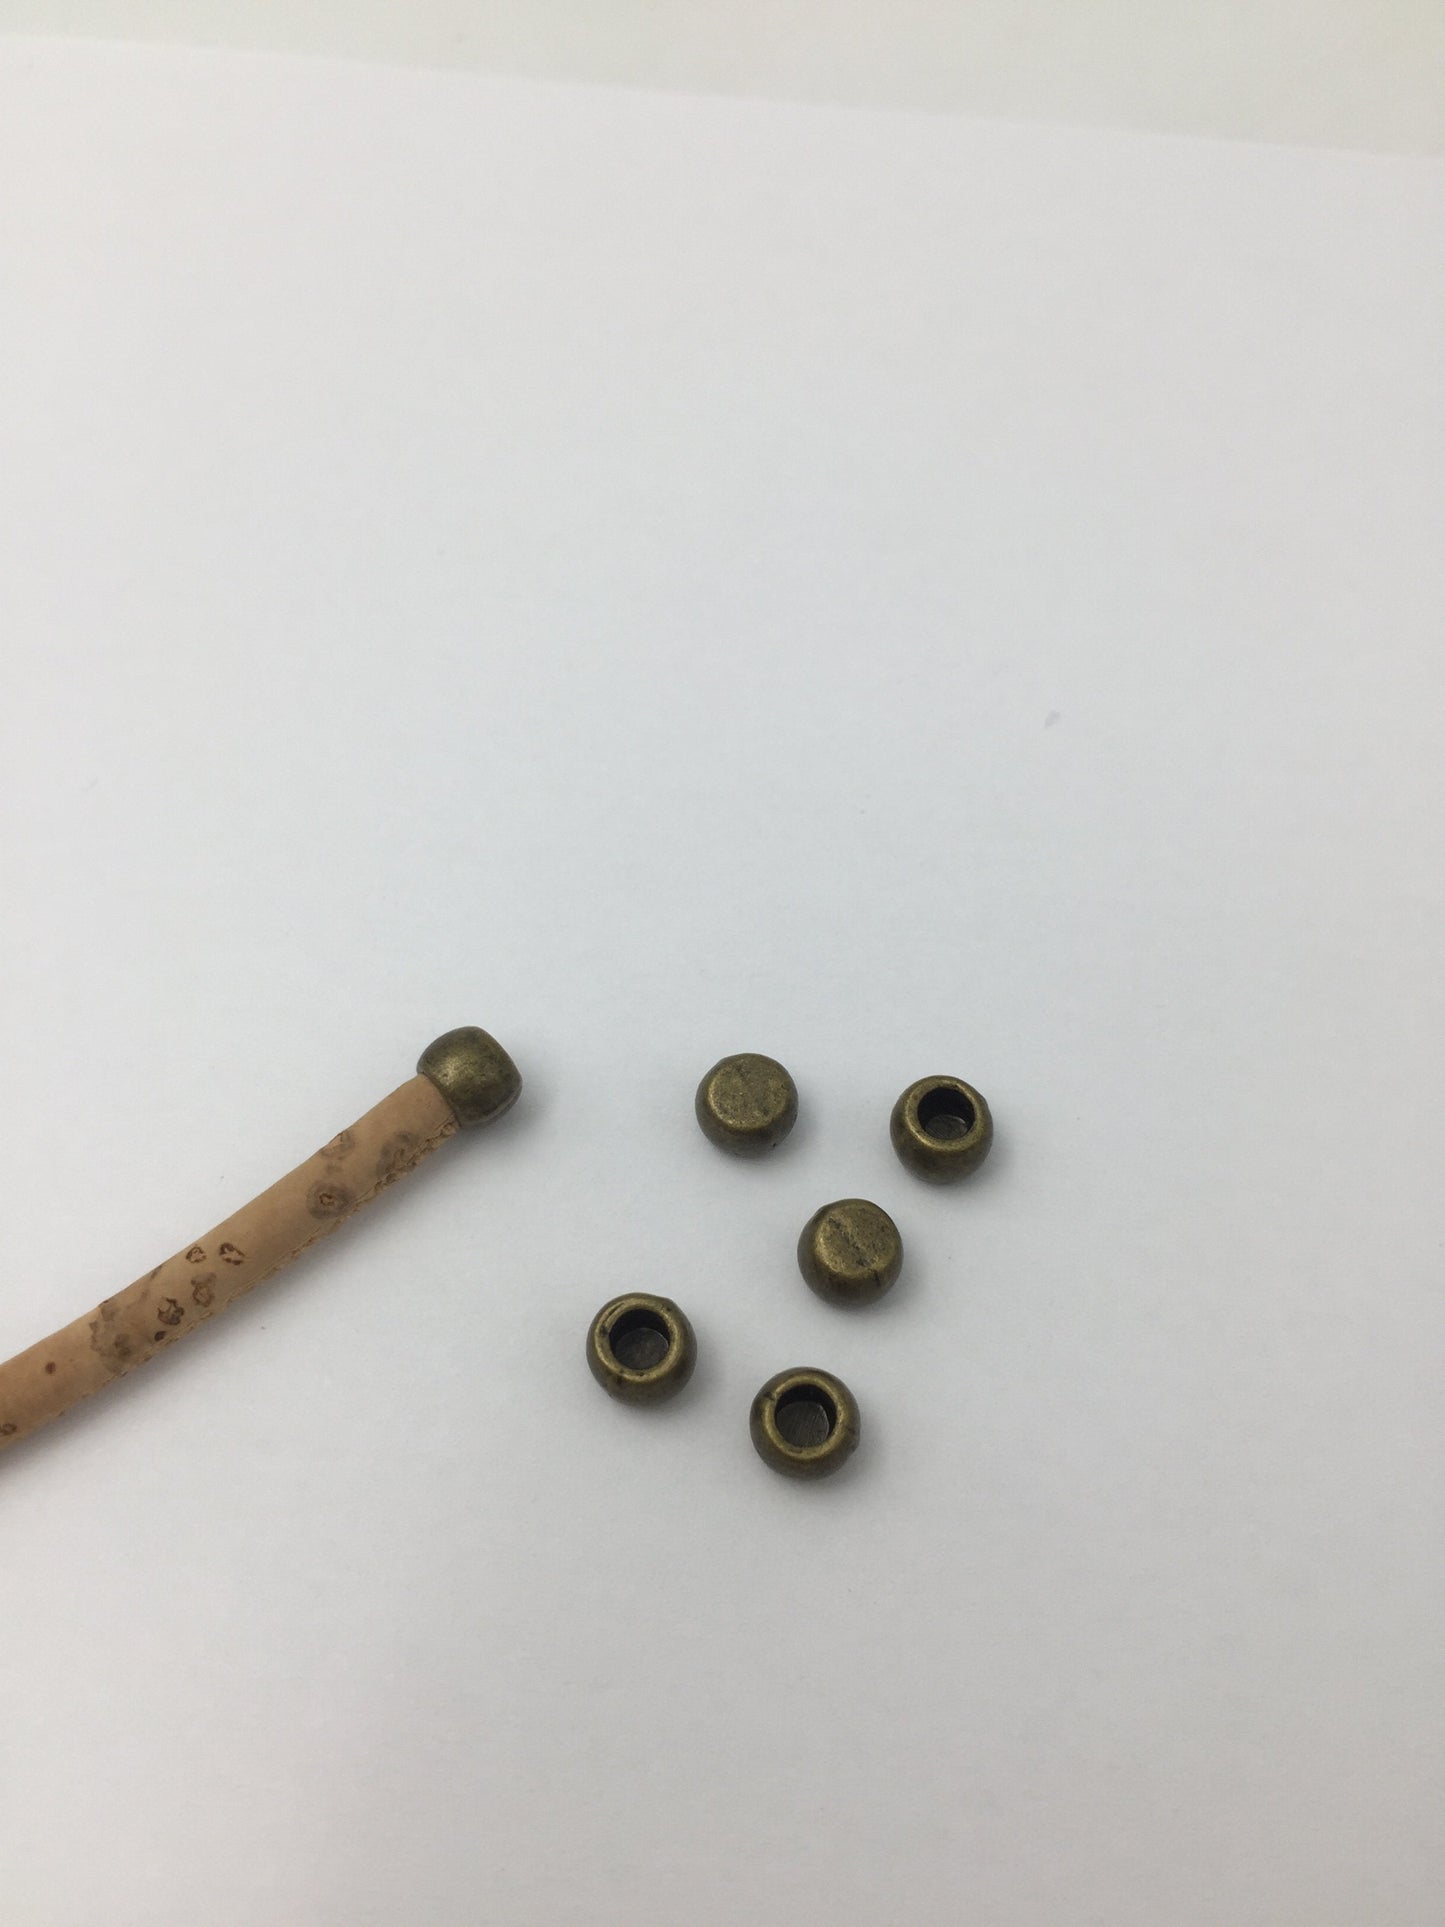 100 pièces pour 3mm rond en cuir Antique argent bijoux terminal bijoux fournitures bijoux trouver D-5-3-8